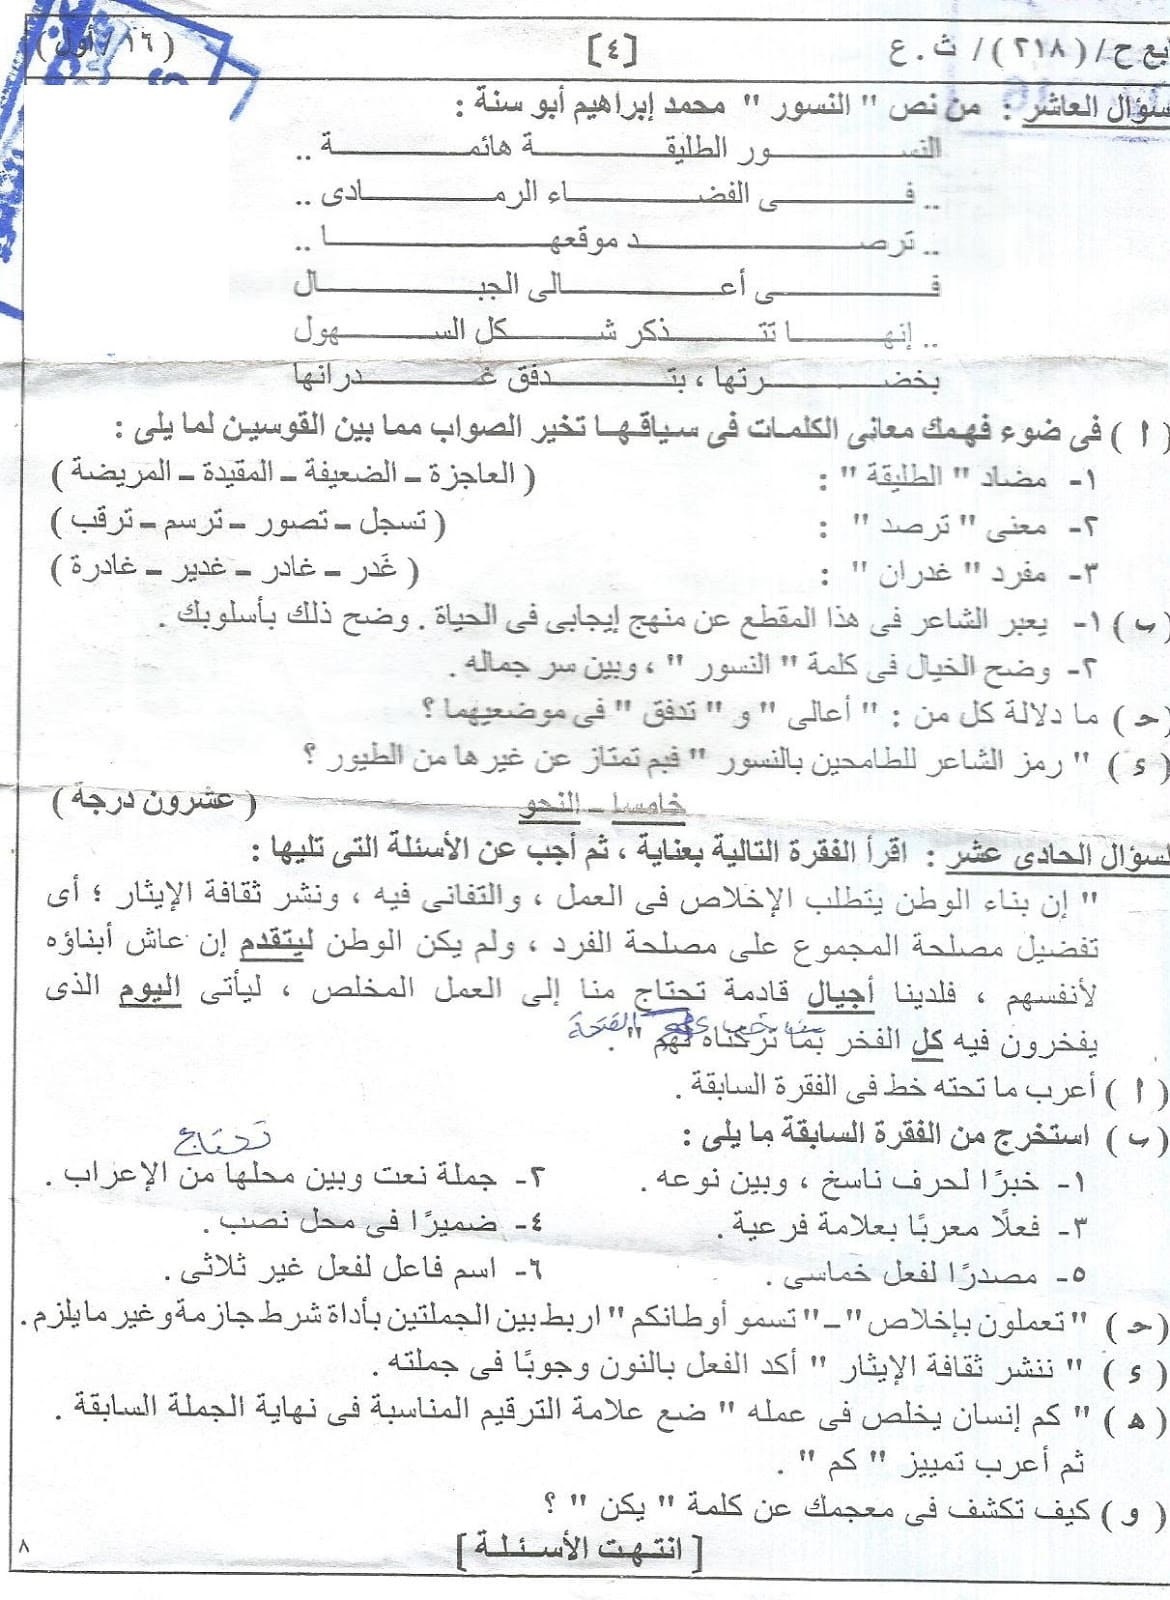 امتحان اللغة العربية للثانوية العامة 2016 + الاجابات النموذجية